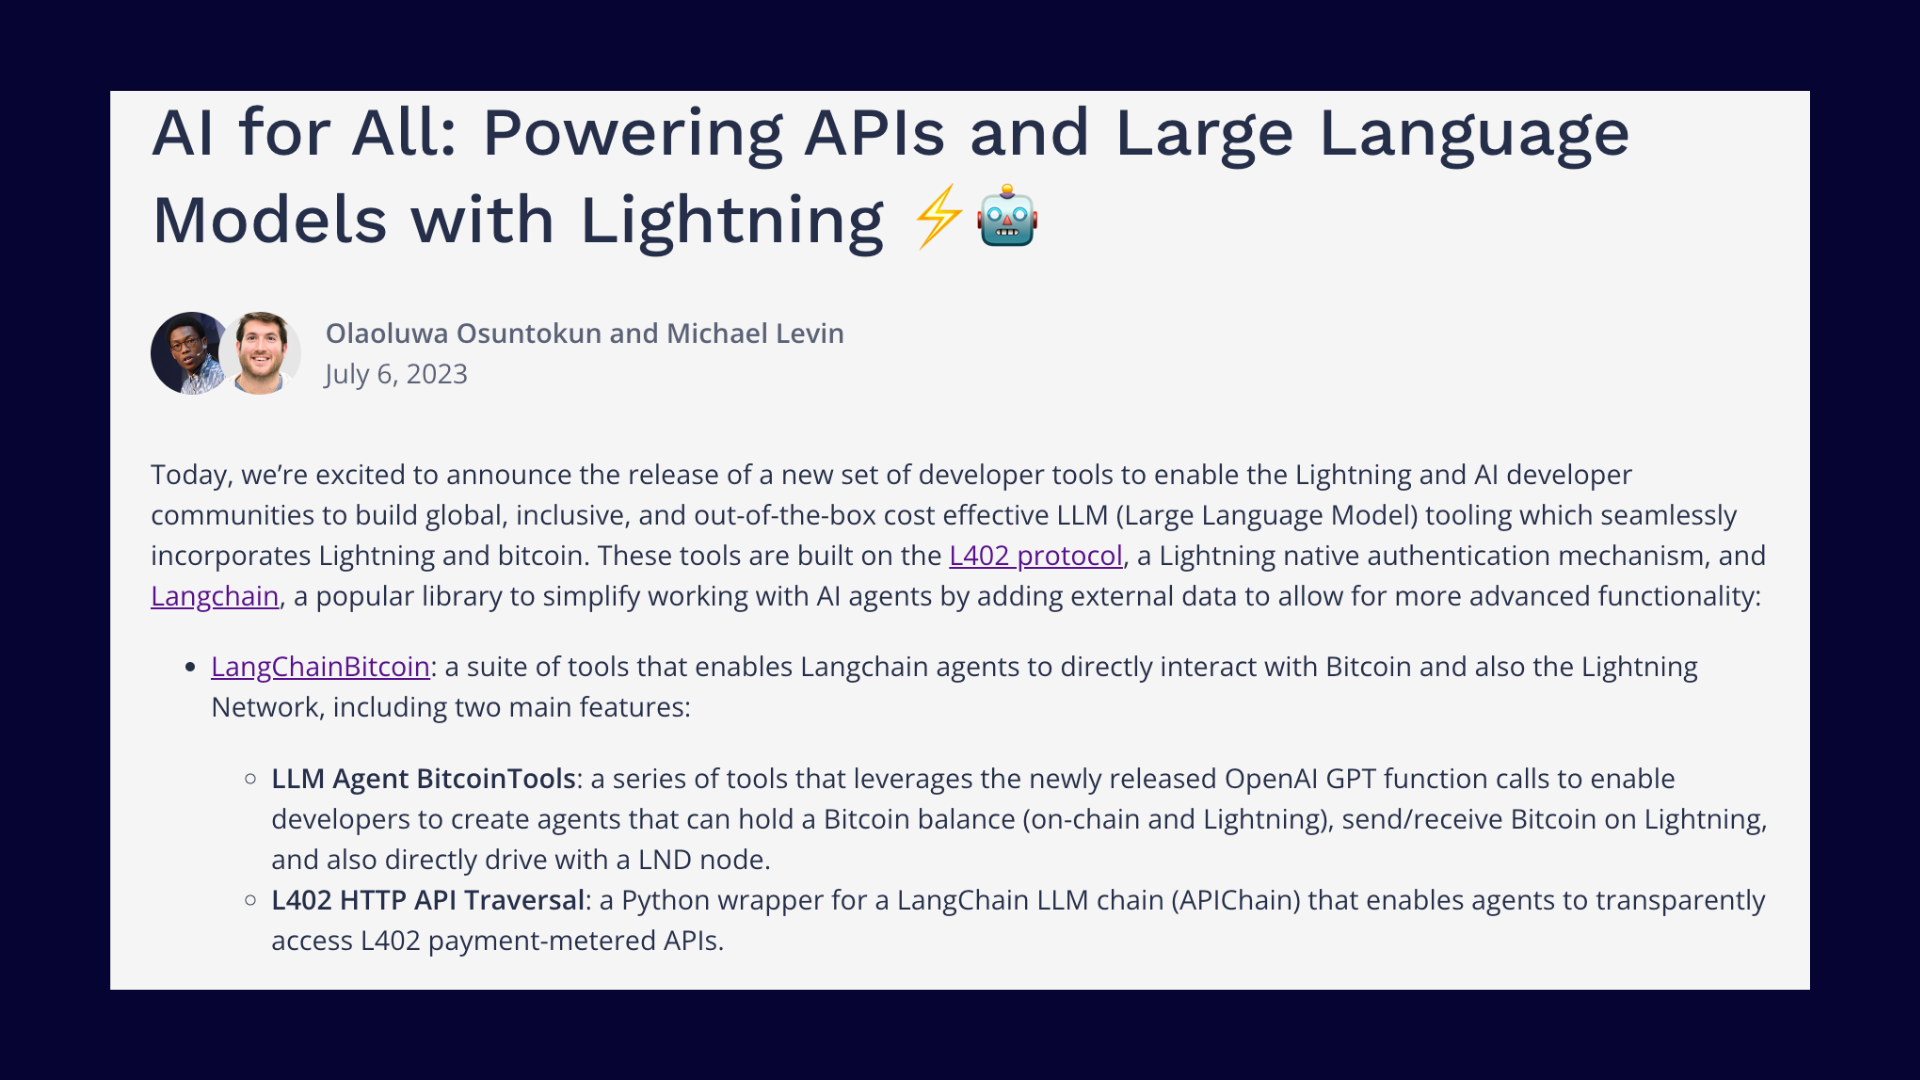 Lightning-native L402 Protocol